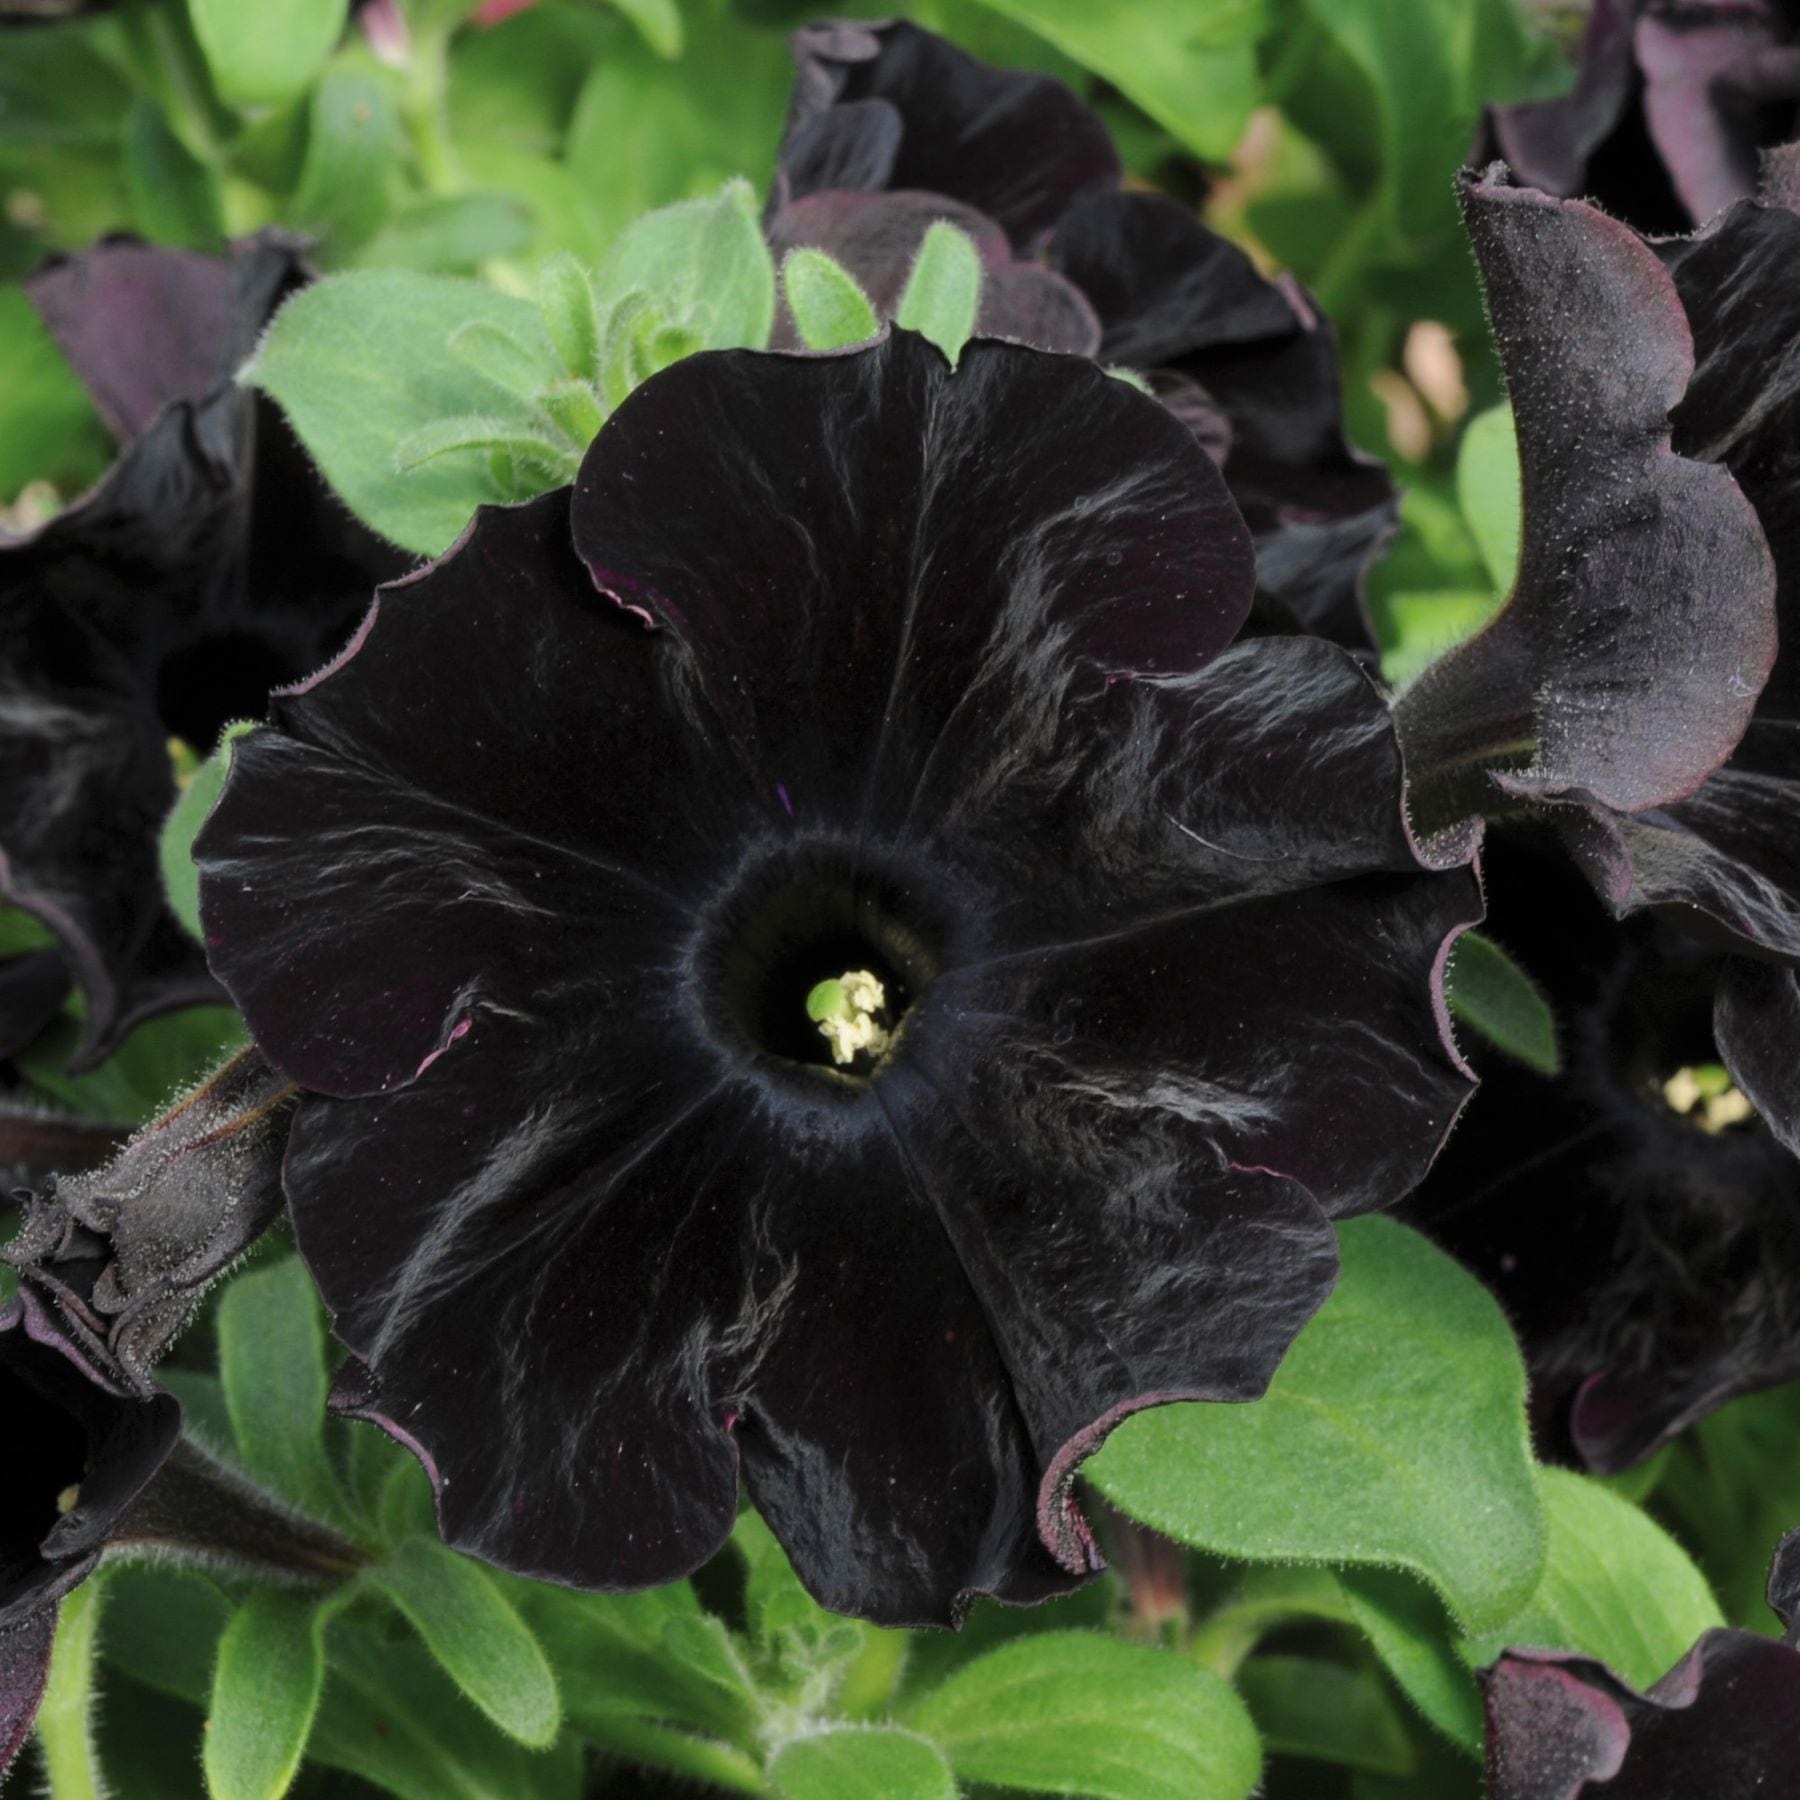 dt-brown FLOWER PLANTS 5 x Young Plants Petunia Black Velvet Plants